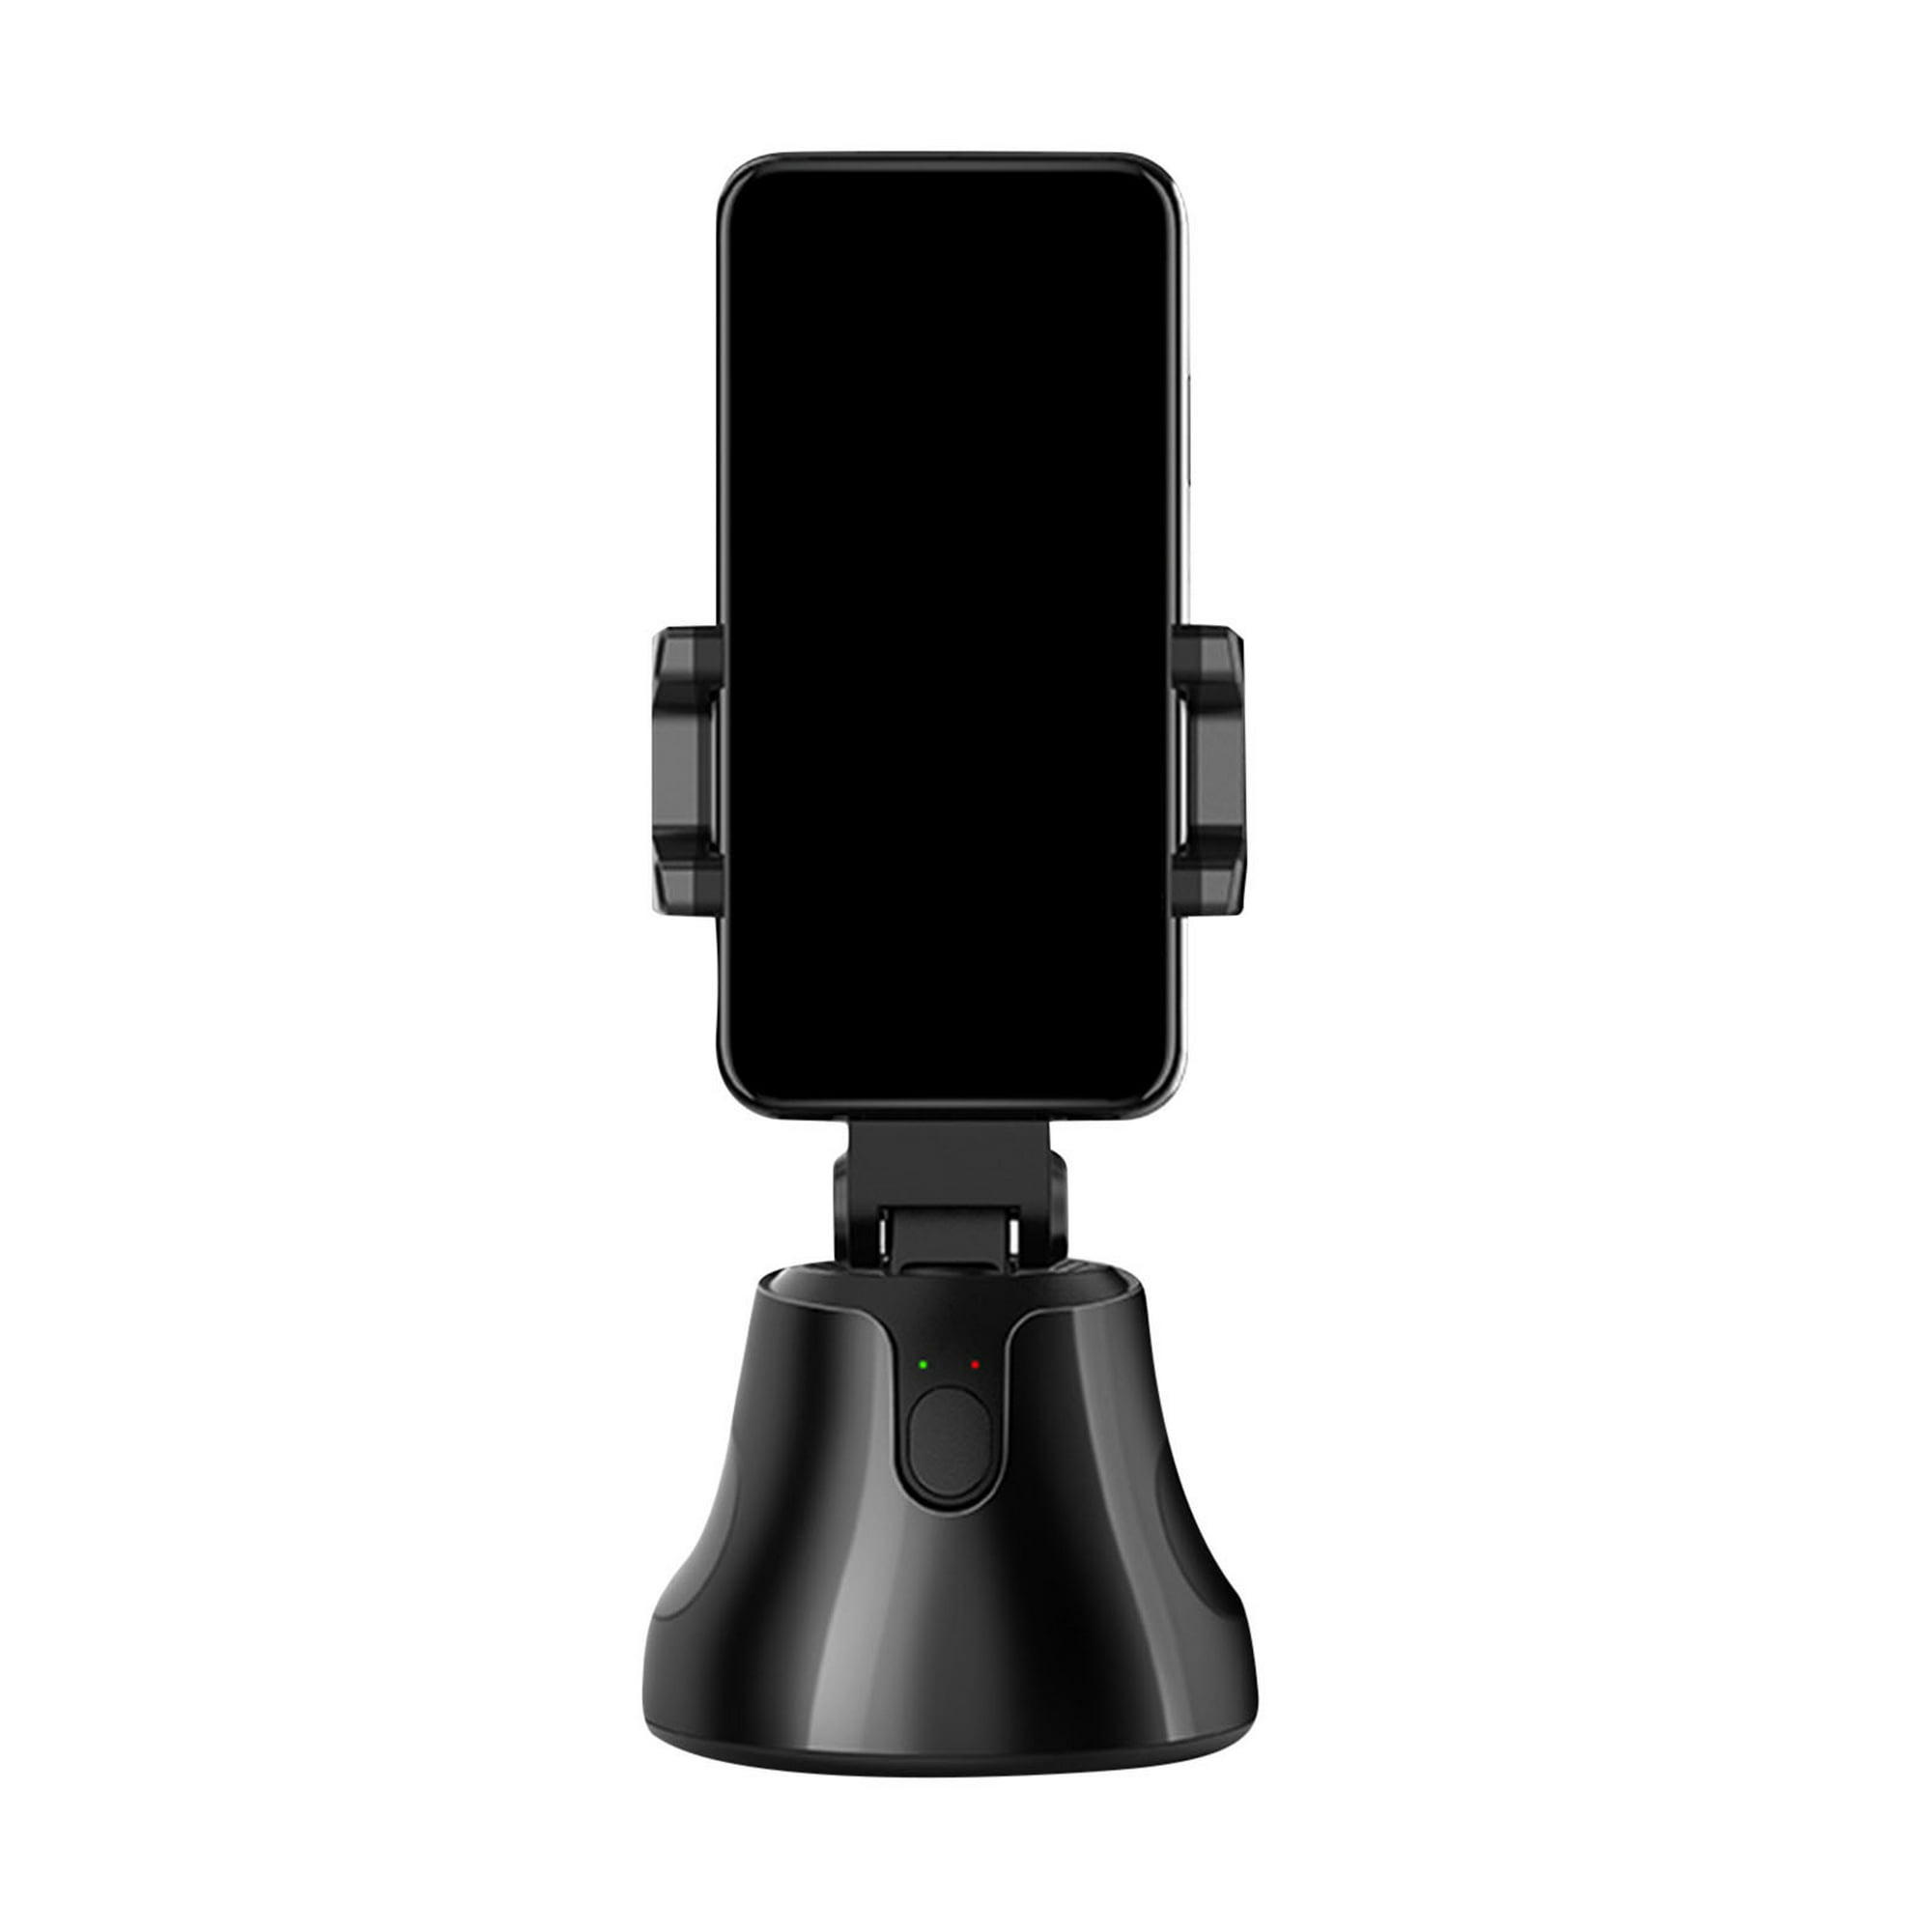 Trípode para teléfono Selfie Stick con control remoto, soporte de trípode  extensible de 60 pulgadas para iPhone y cámara Android, rotación de 360°